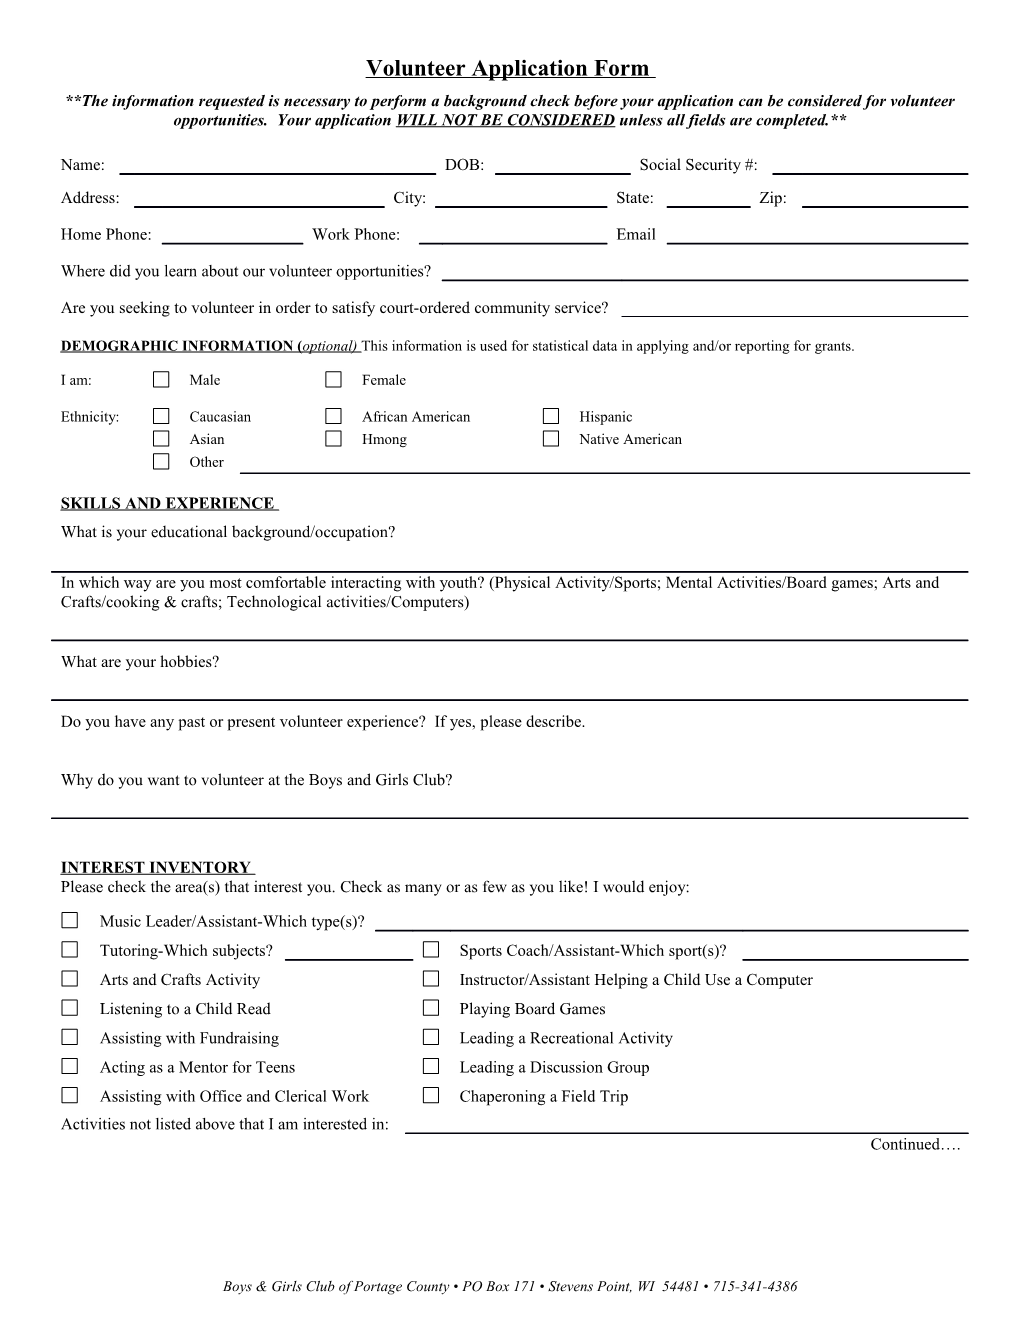 Volunteer Application Form s1